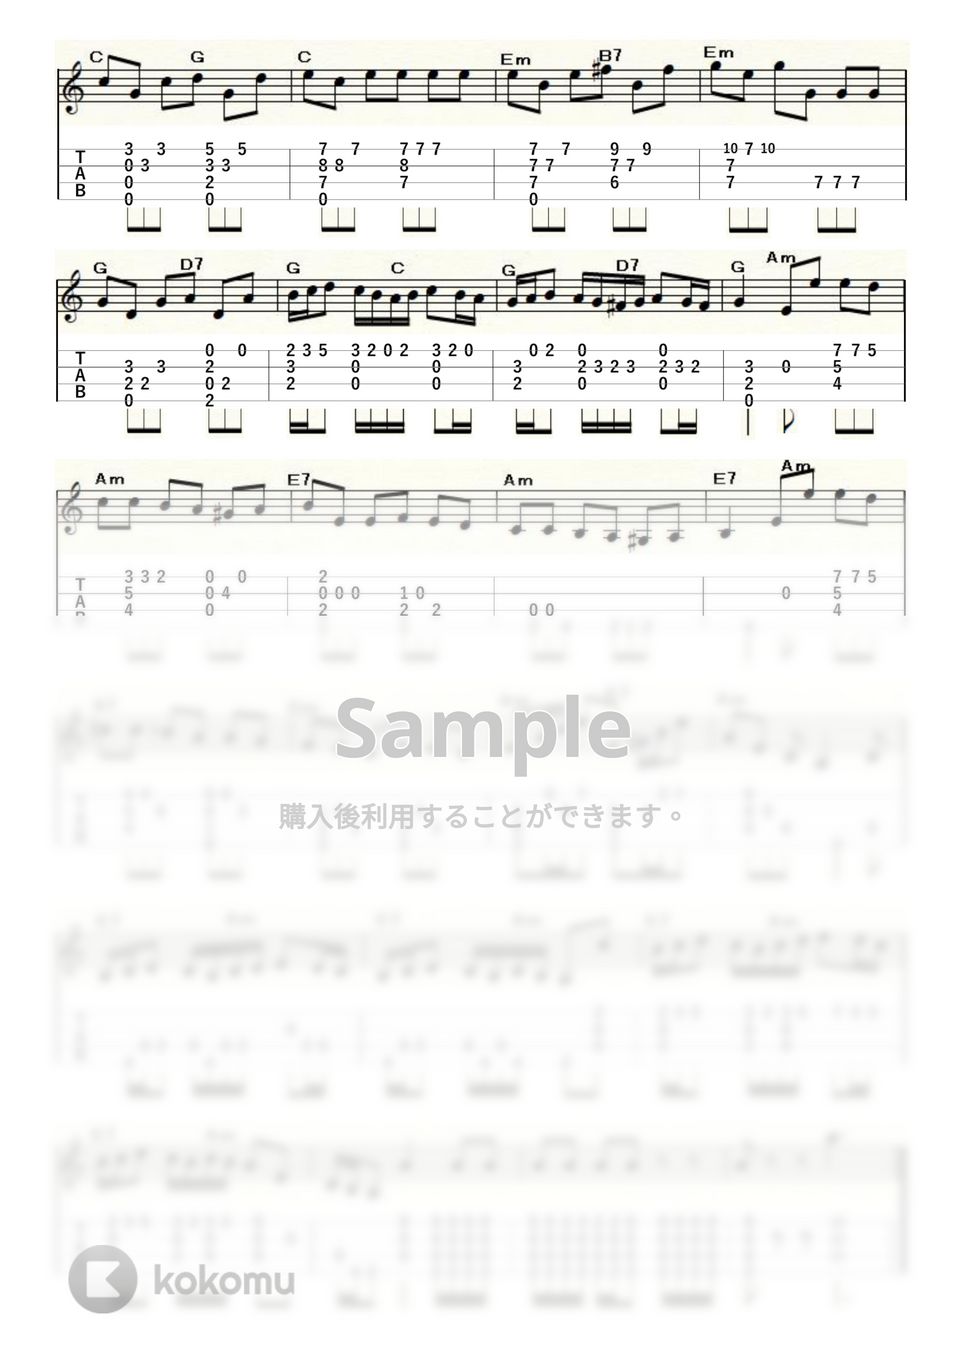 リスト - ラ・カンパネラ (ｳｸﾚﾚｿﾛ / Low-G / 中～上級) by ukulelepapa